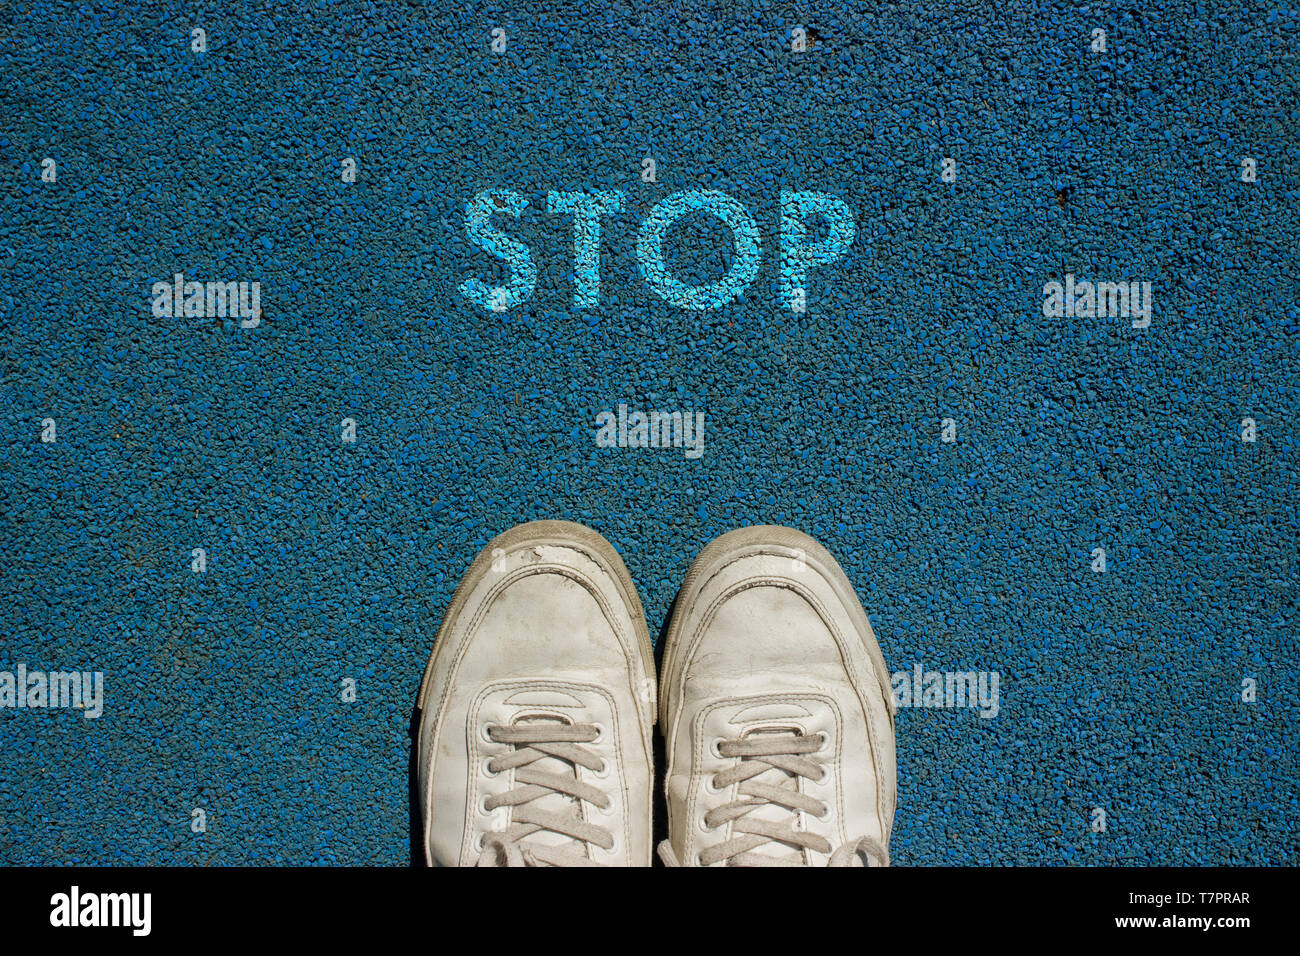 Nuevo concepto de vida, calzado deportivo y la palabra STOP escrita en azul a Pie TIERRA, slogan de motivación. Foto de stock